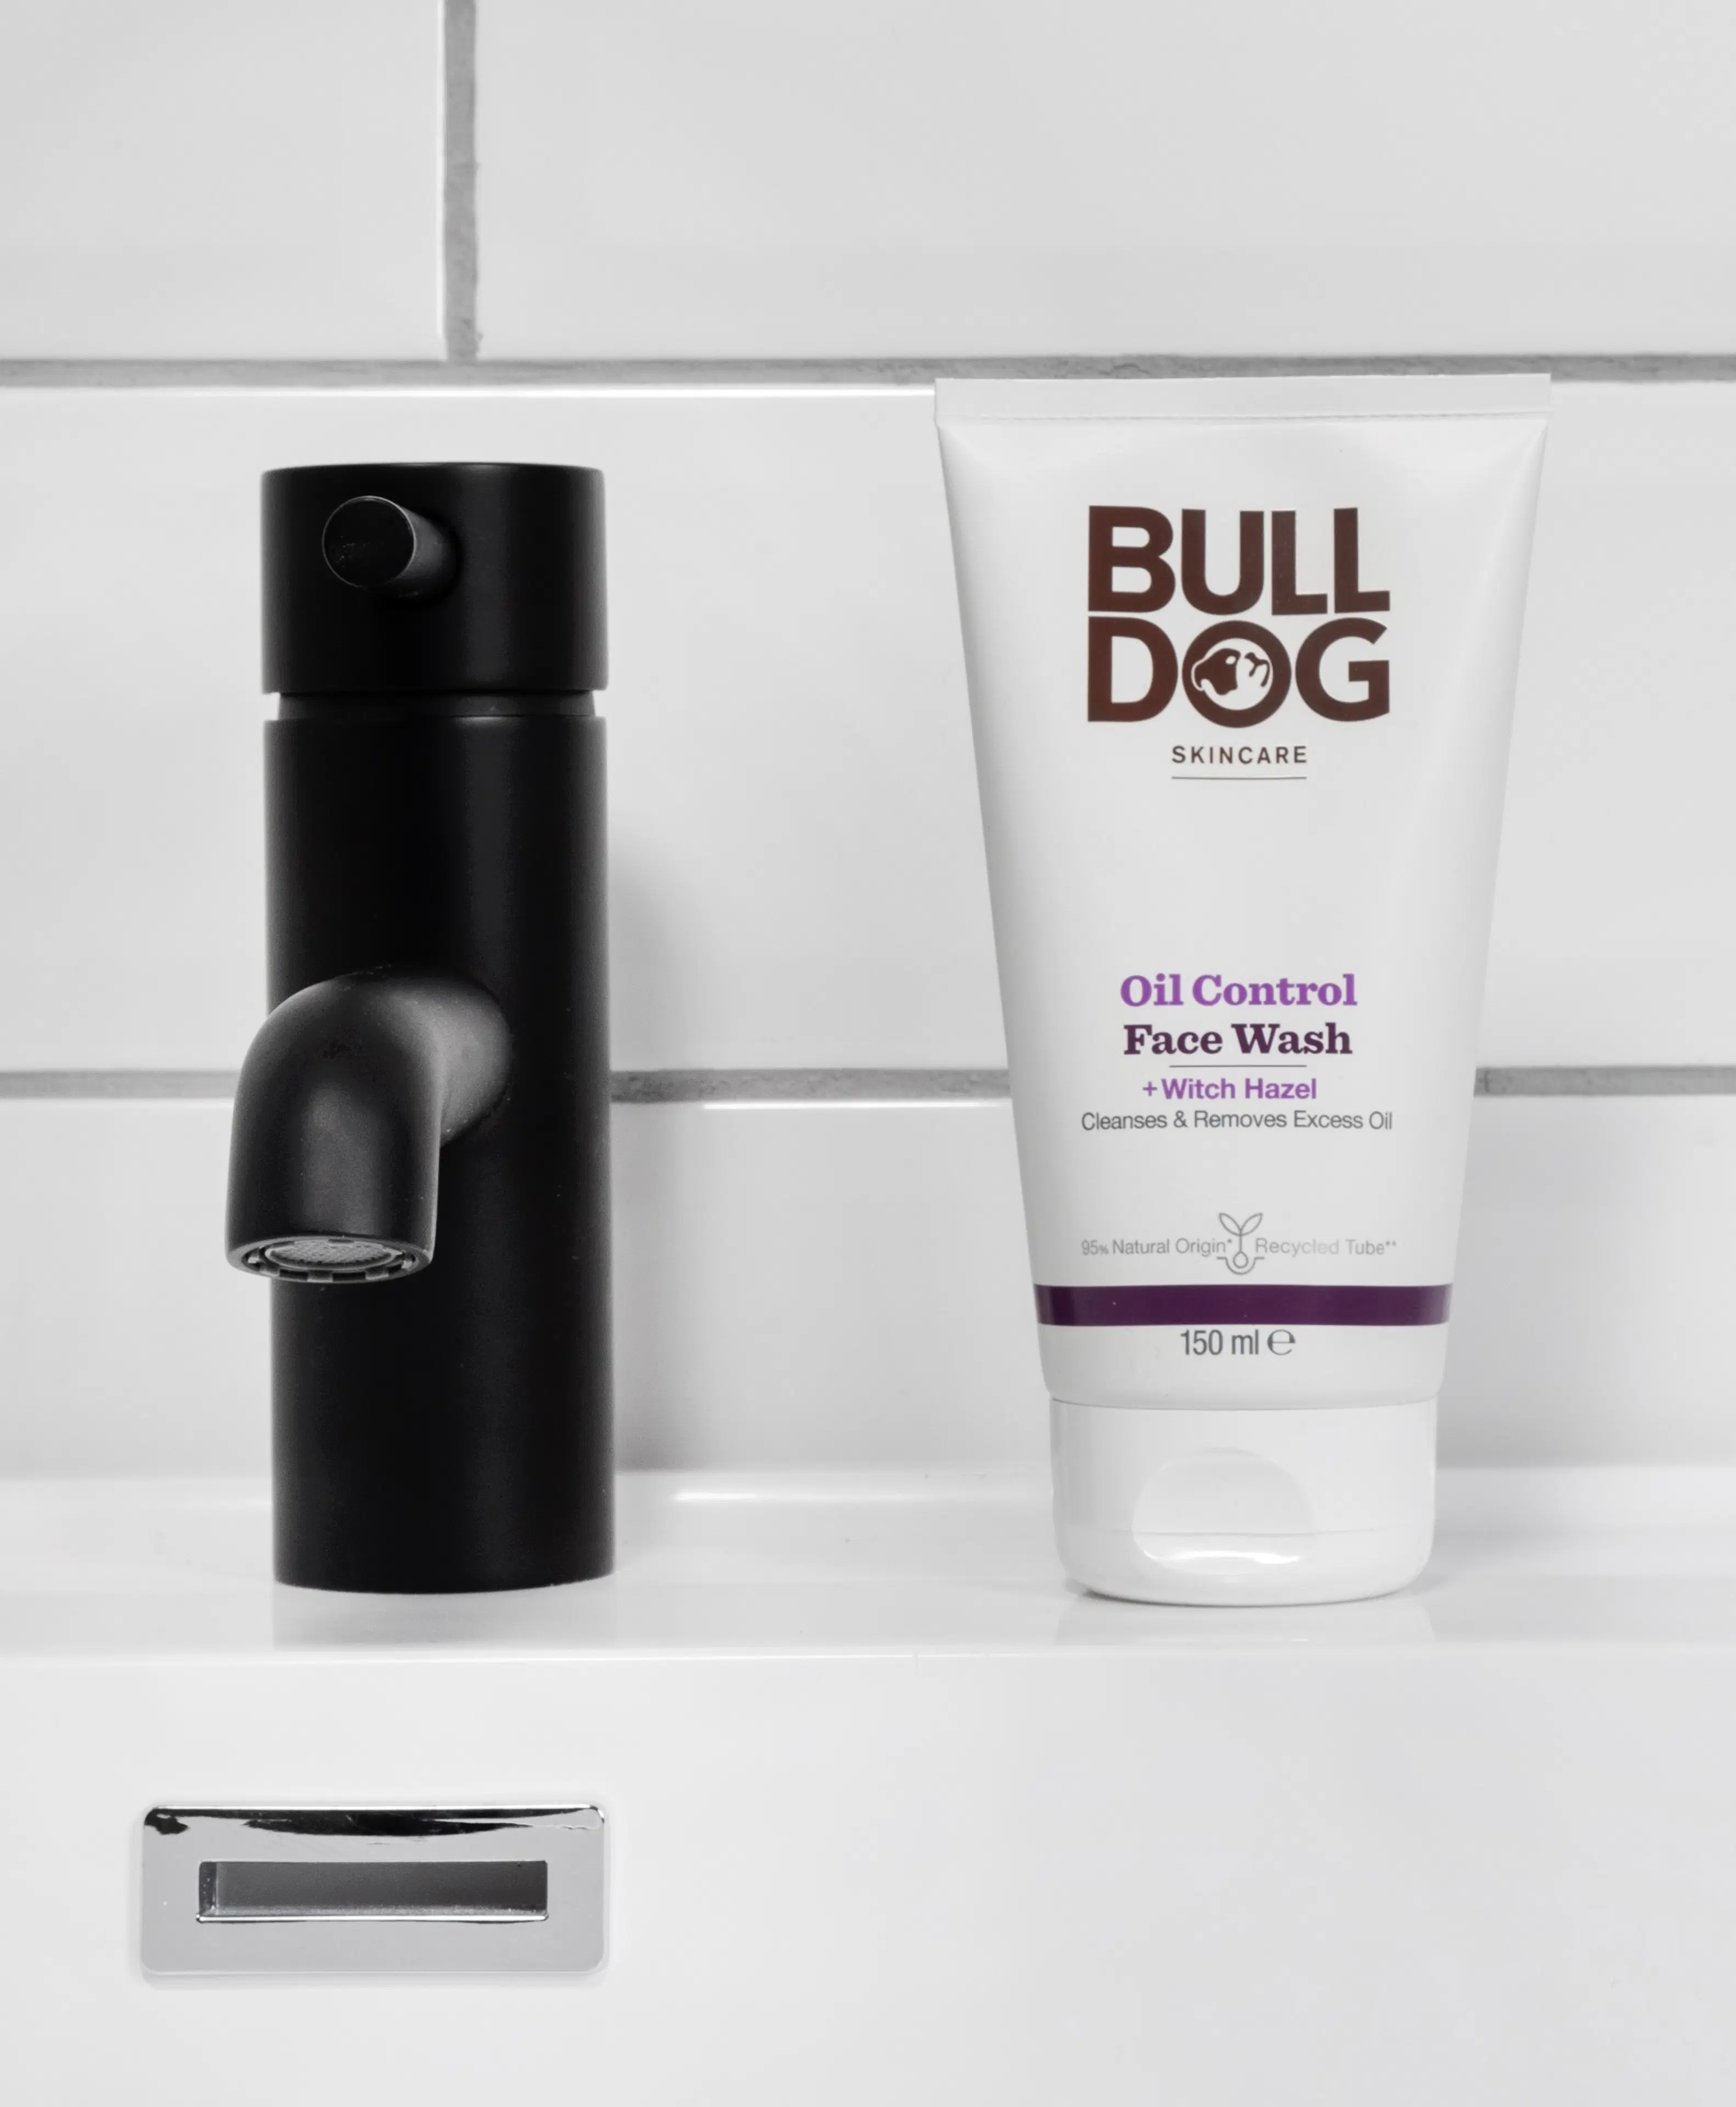 Bulldog Oil Control Face Wash kasvopesu 150 ml